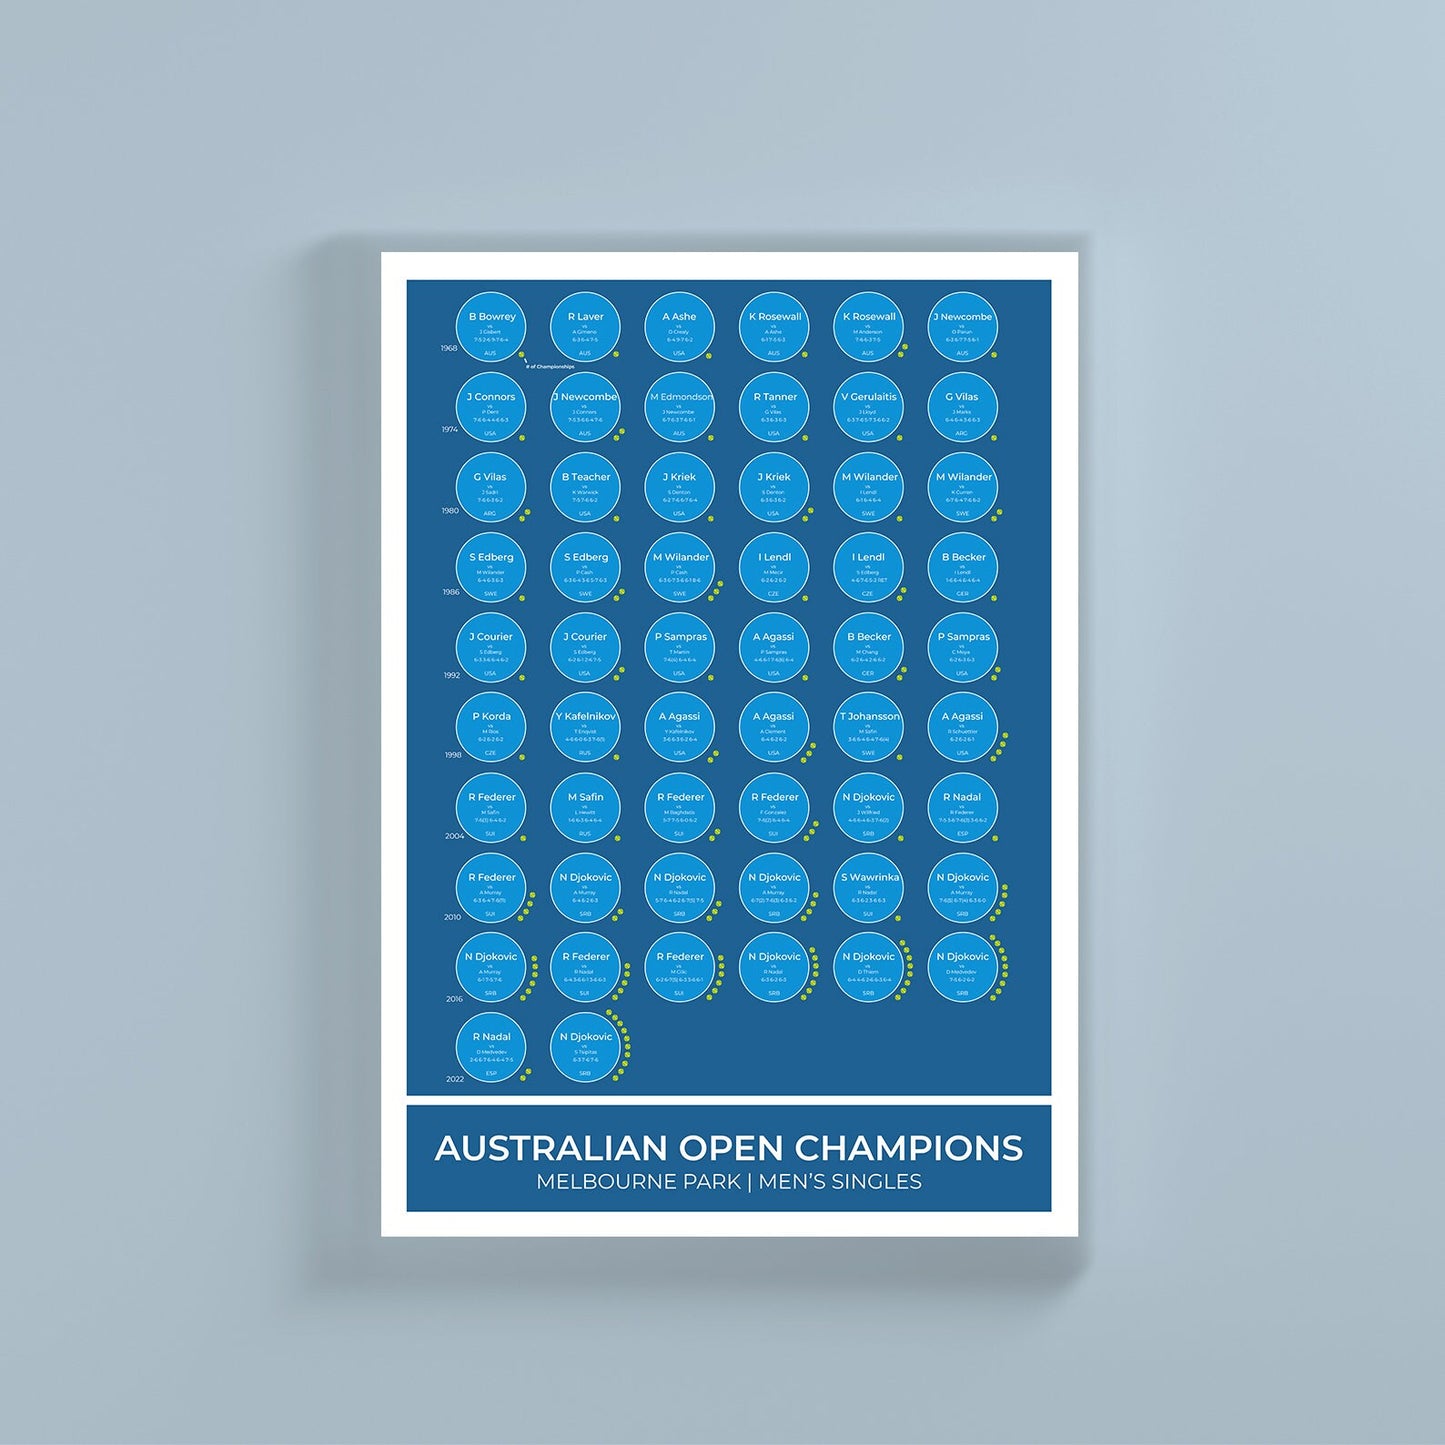 Champions du Grand Chelem de l'Open d'Australie de tennis 